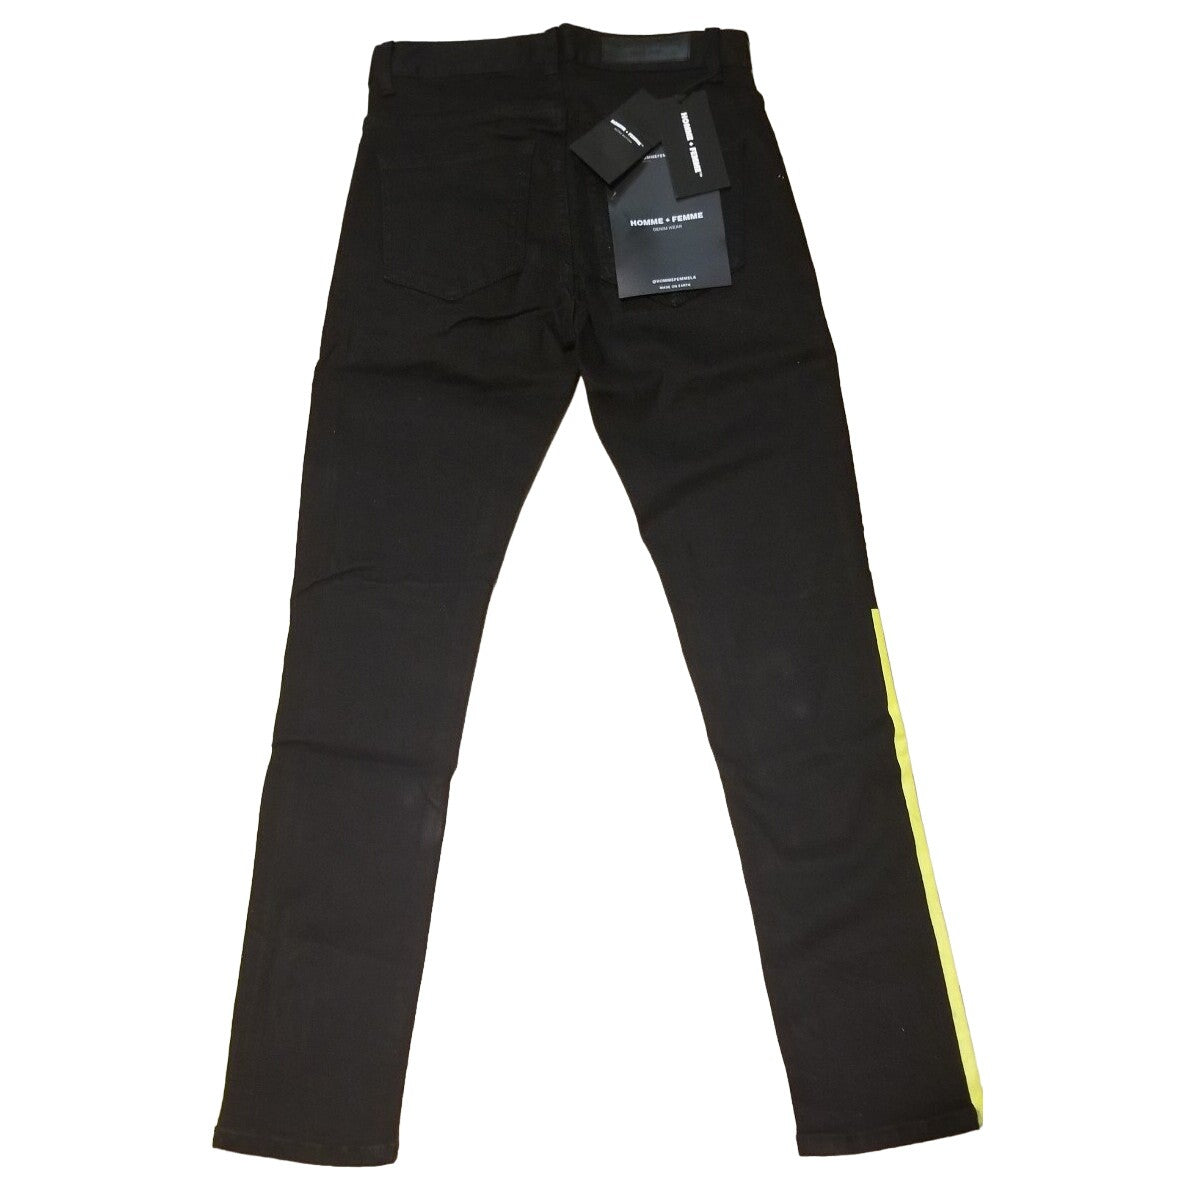 Homme Femme Black Jean's Neon Side Stripe UNISEX-Size 28